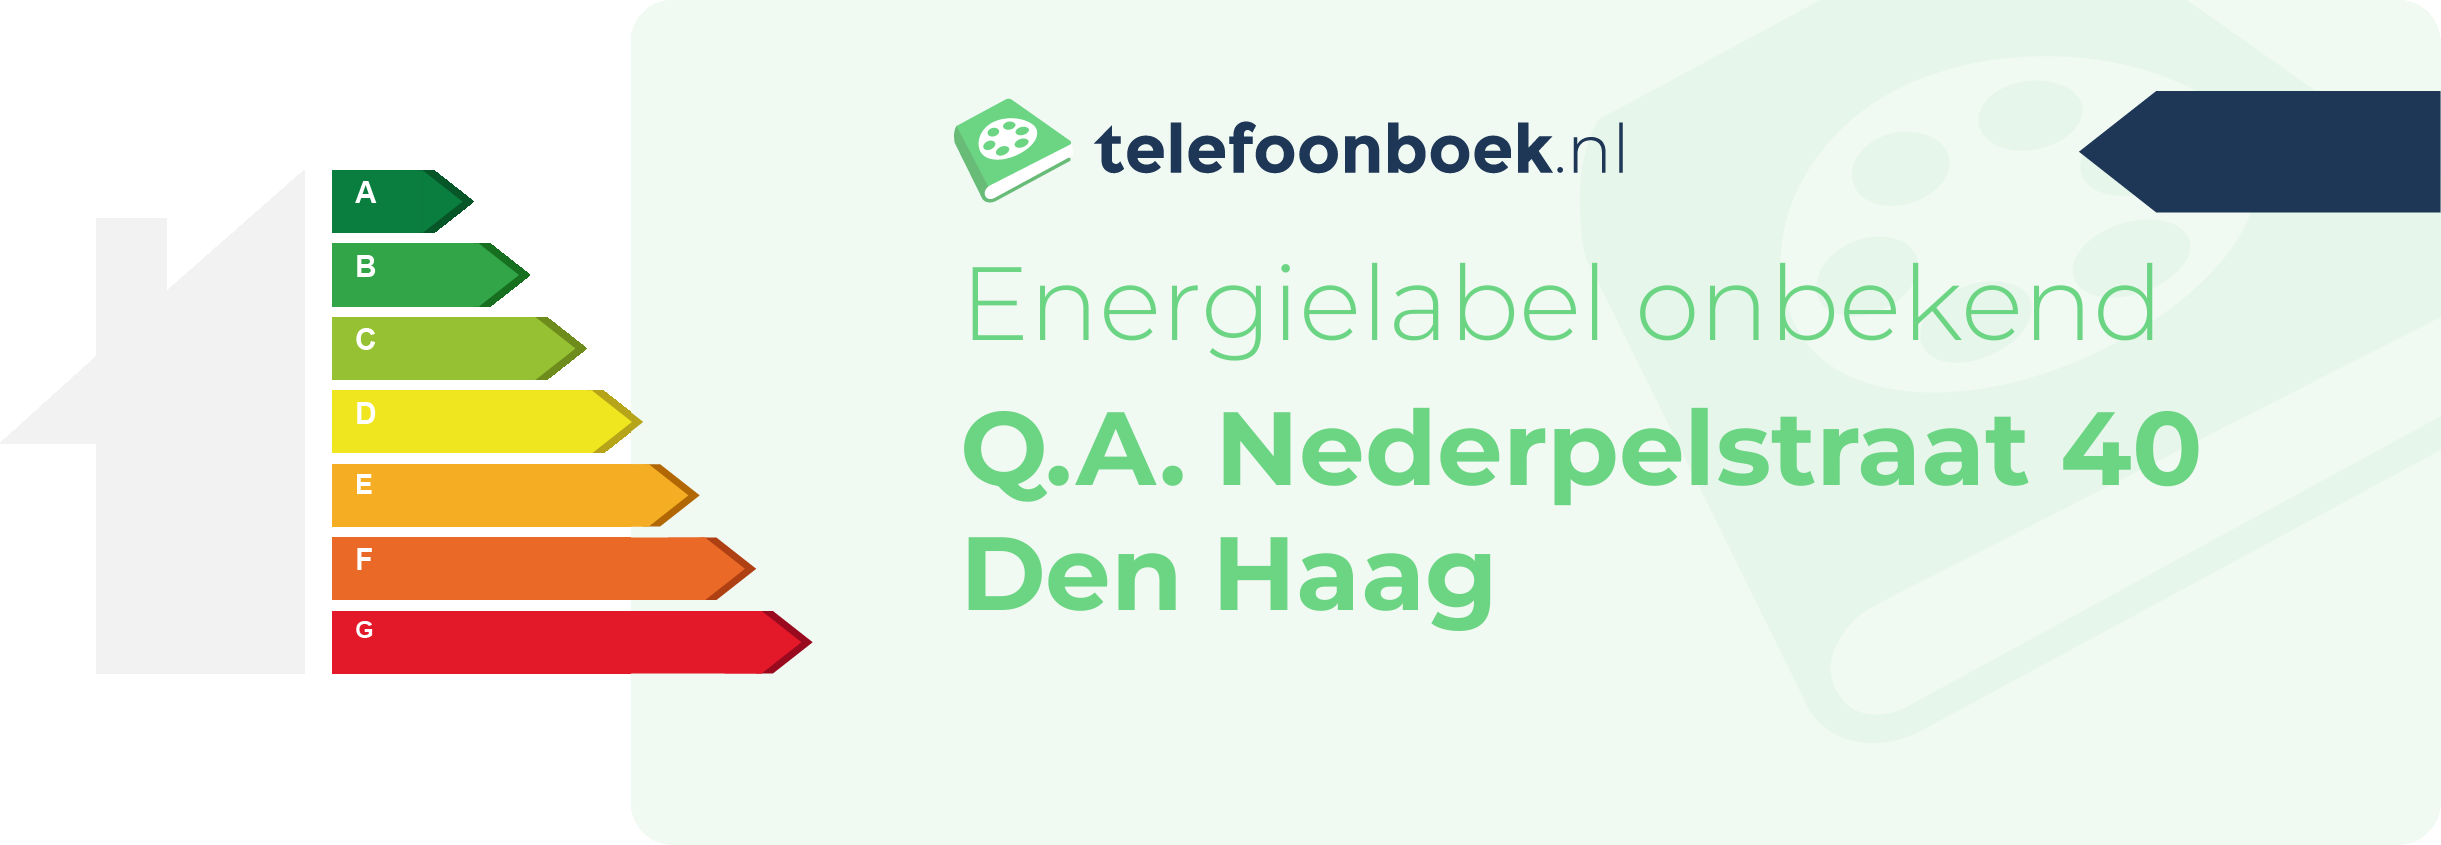 Energielabel Q.A. Nederpelstraat 40 Den Haag